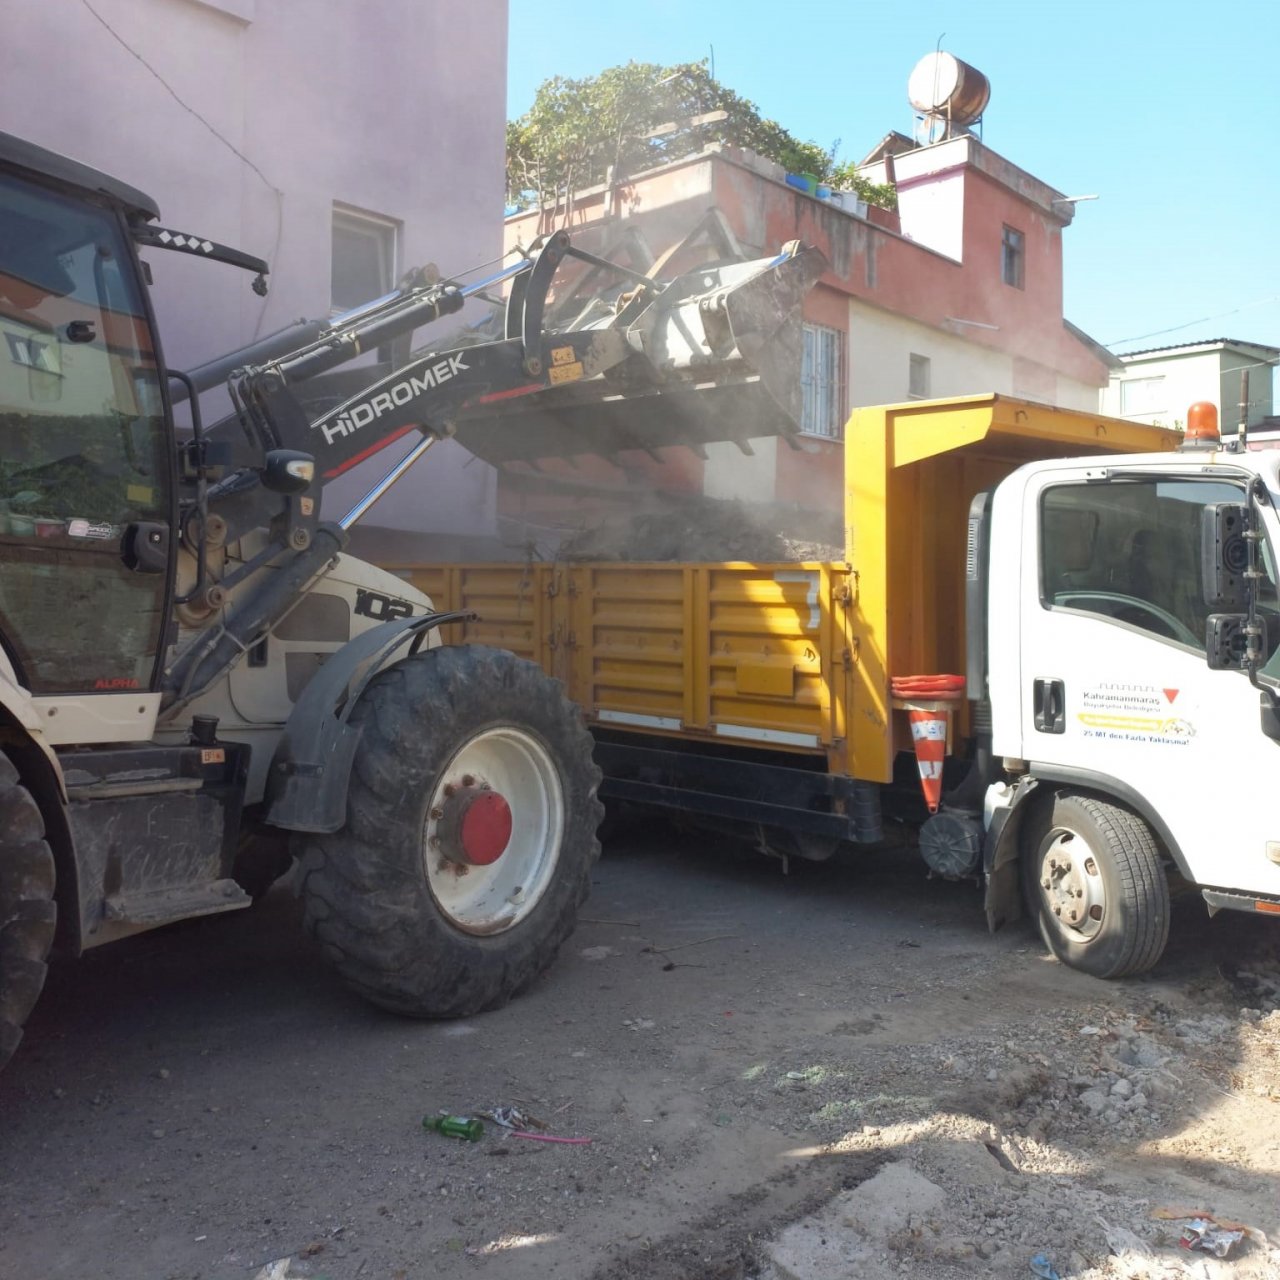 Büyükşehir belediyesi inşaat atıklarını temizliyor